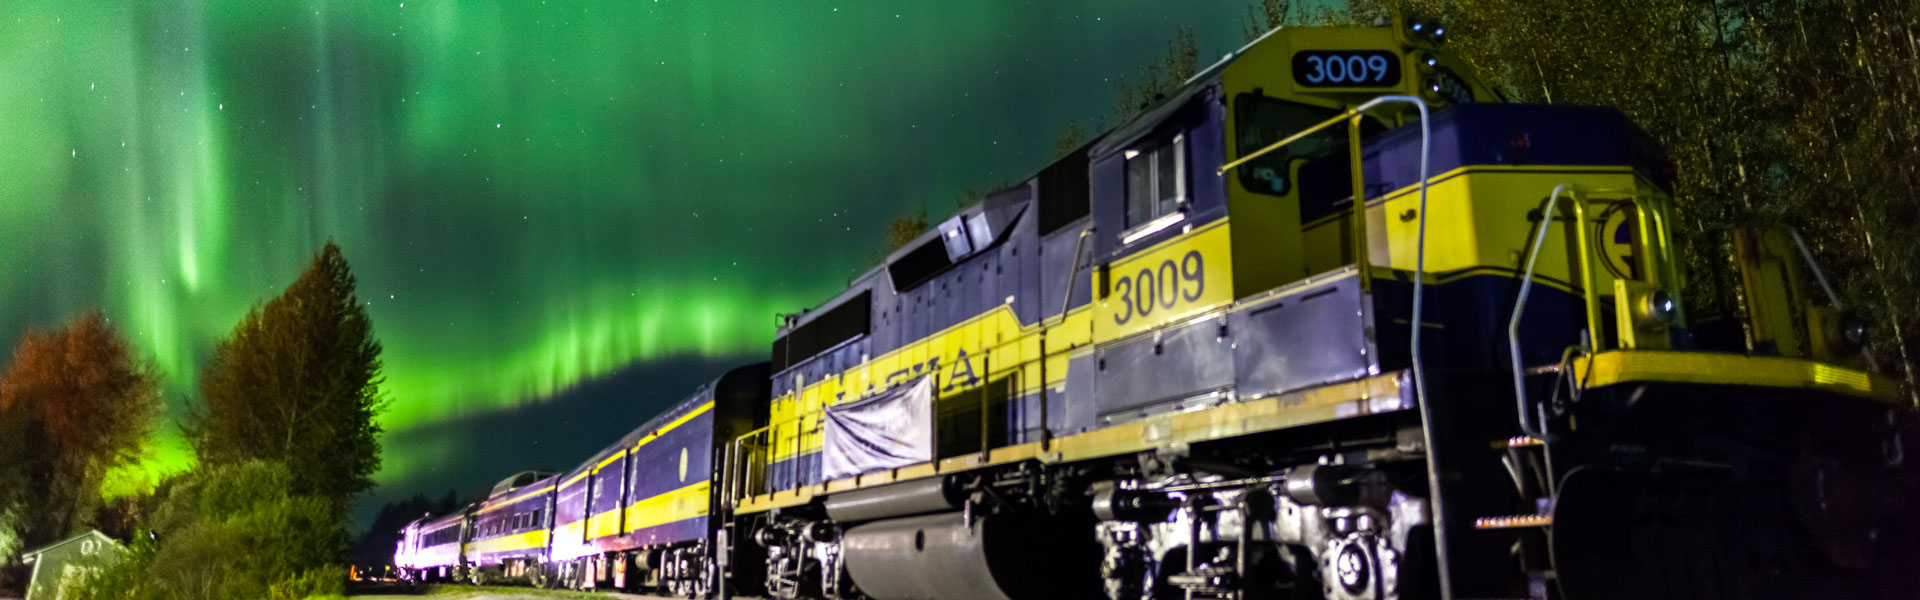 Alaska Train Tours | Best Alaska Rail Trips